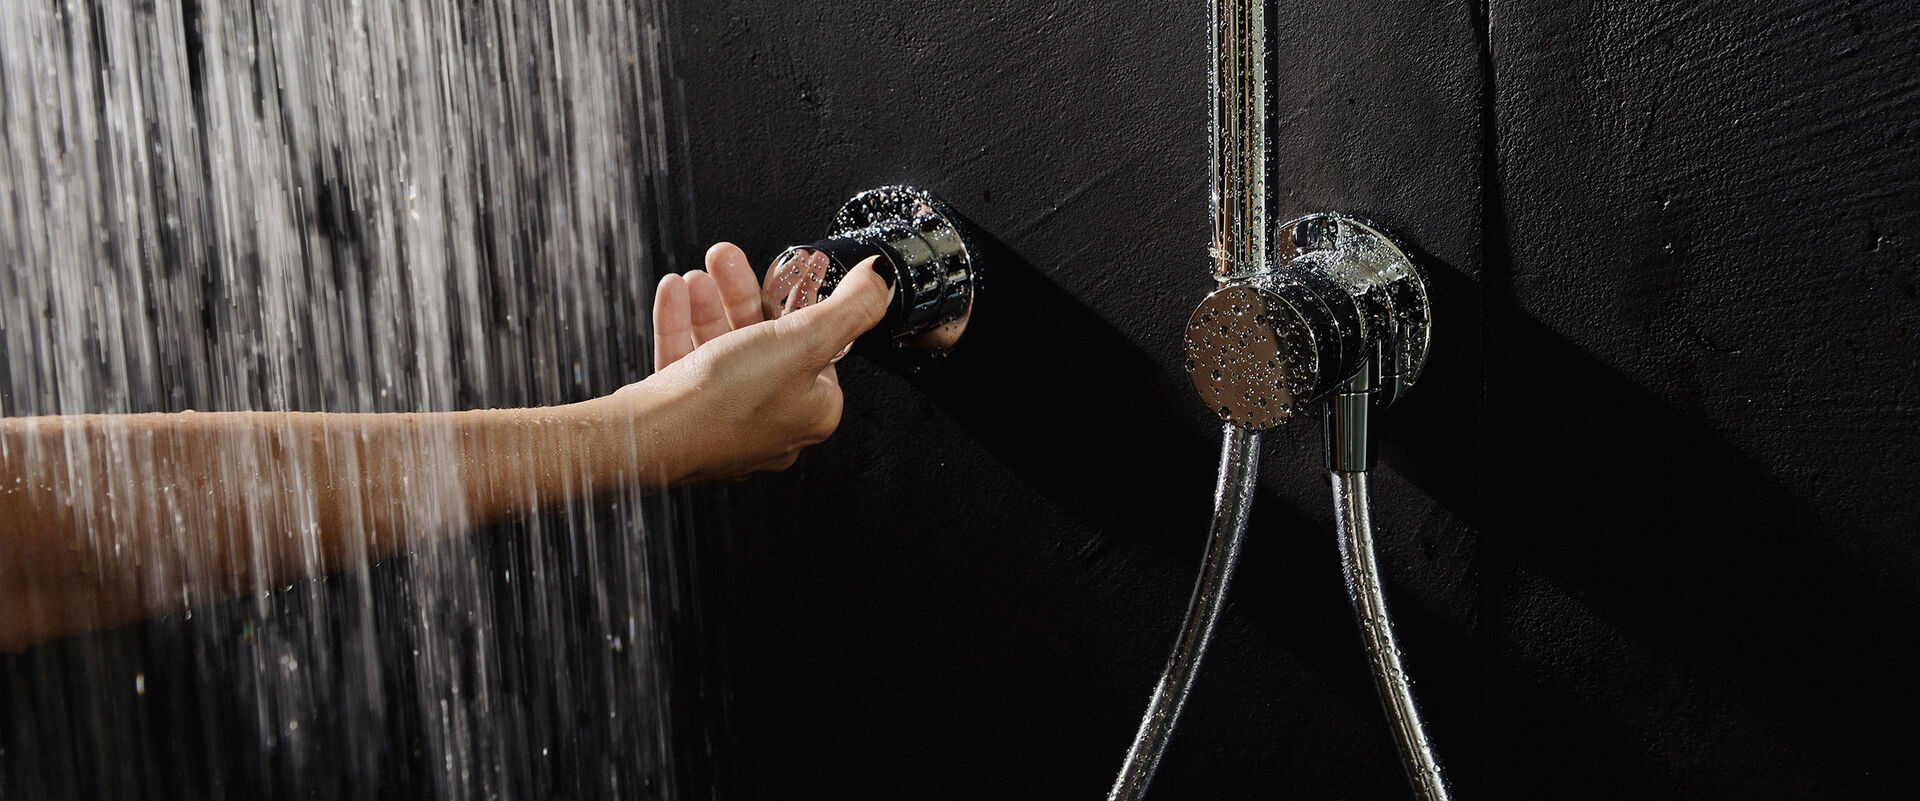 Keuco Ixmo Badarmatur, die an einer robusten schwarzen Wand installiert ist. Die Armatur wird gerade von einer weiblichen Hand betätigt, über die Wasser aus einem nicht sichtbaren Brausekopf läuft.